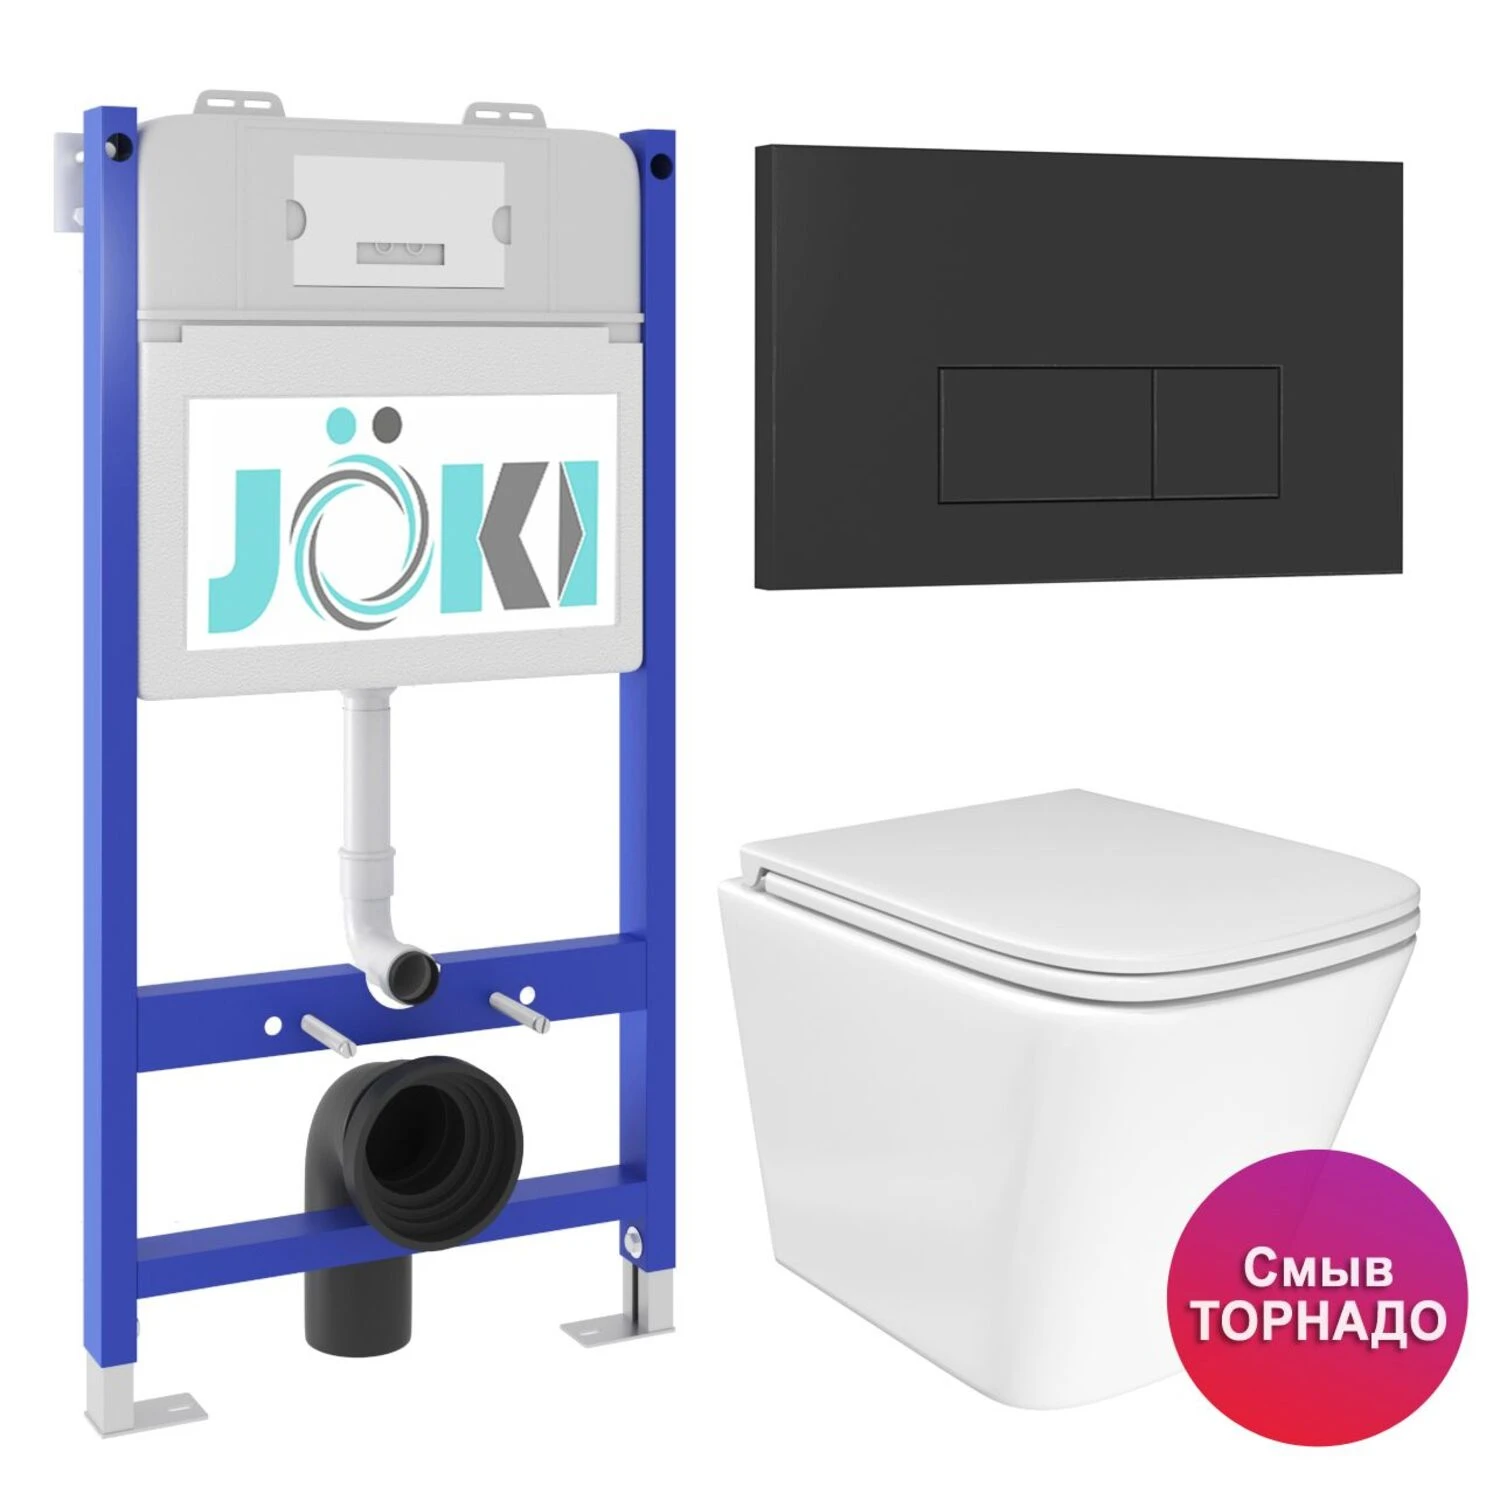 Комплект: JOKI Инсталляция JK03351+Кнопка JK203507BM черный+Verna T JK3031025 унитаз белый, смыв Торнадо